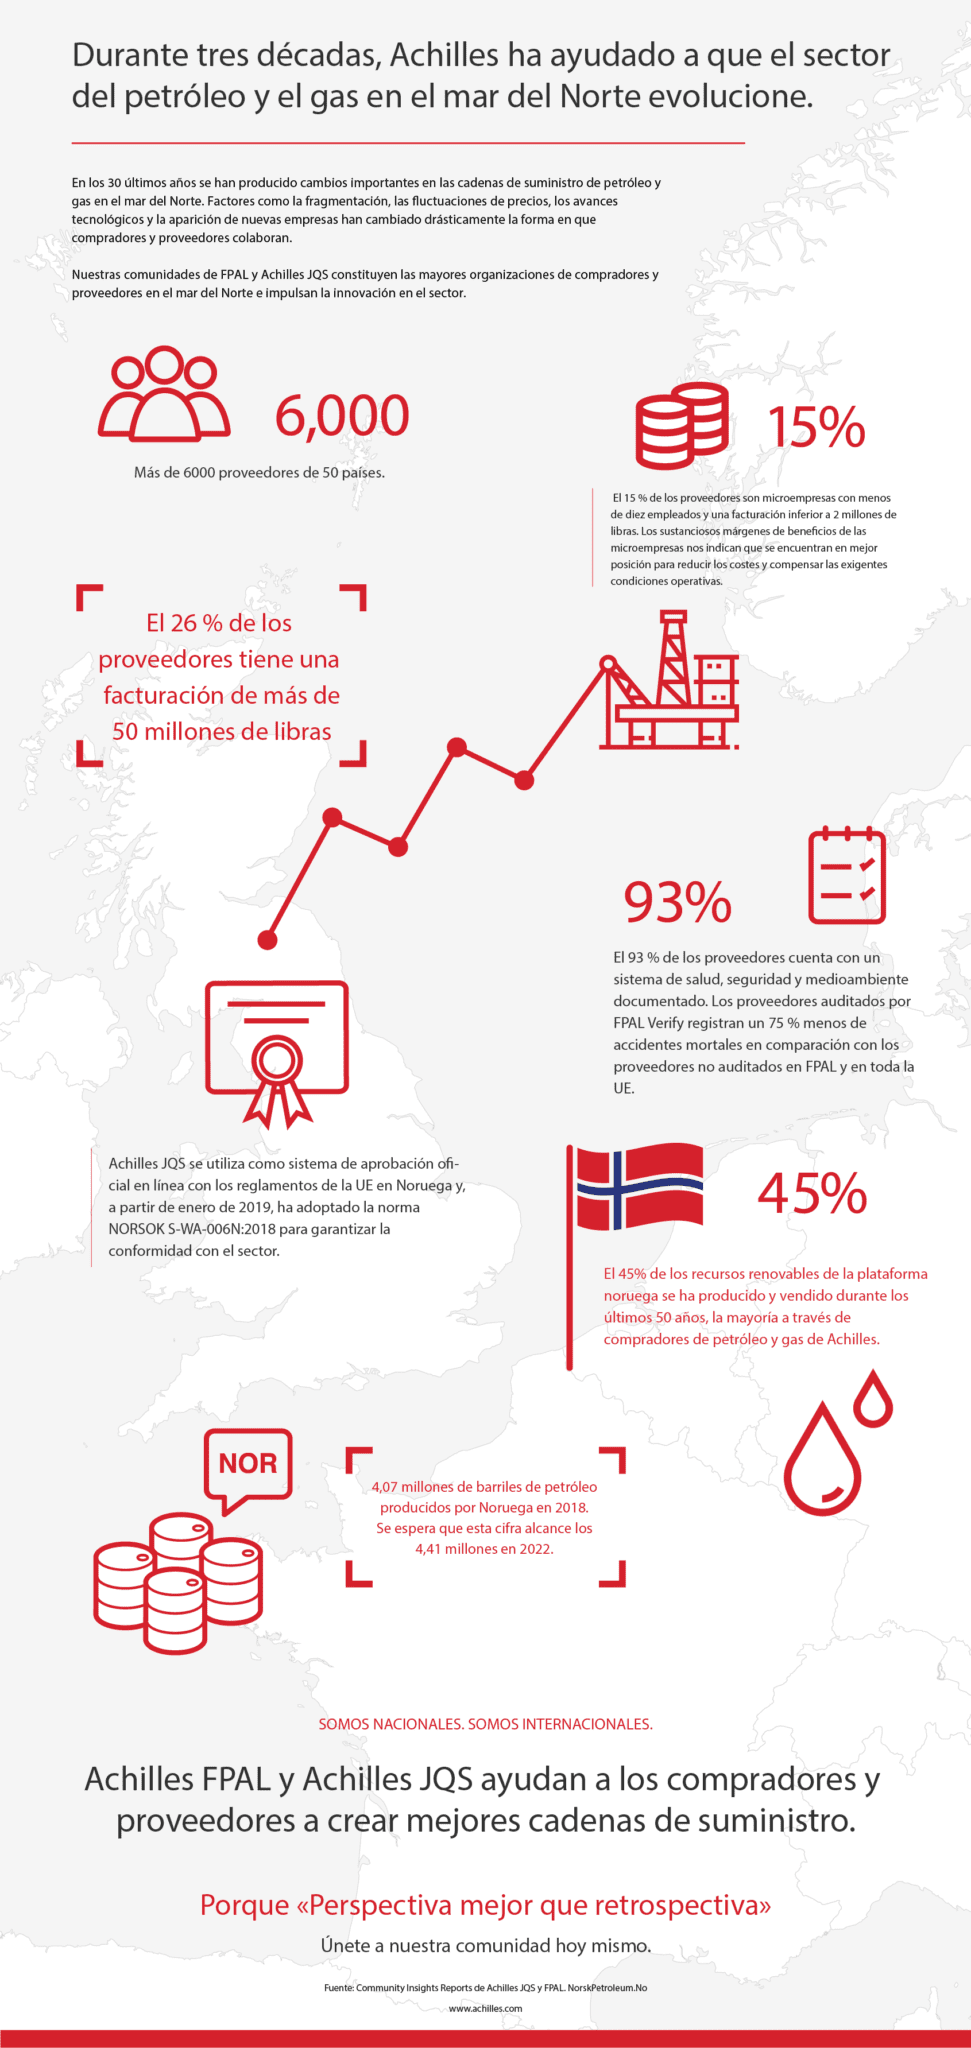 Infographic: Sector del petróleo y el gas en el mar del Norte